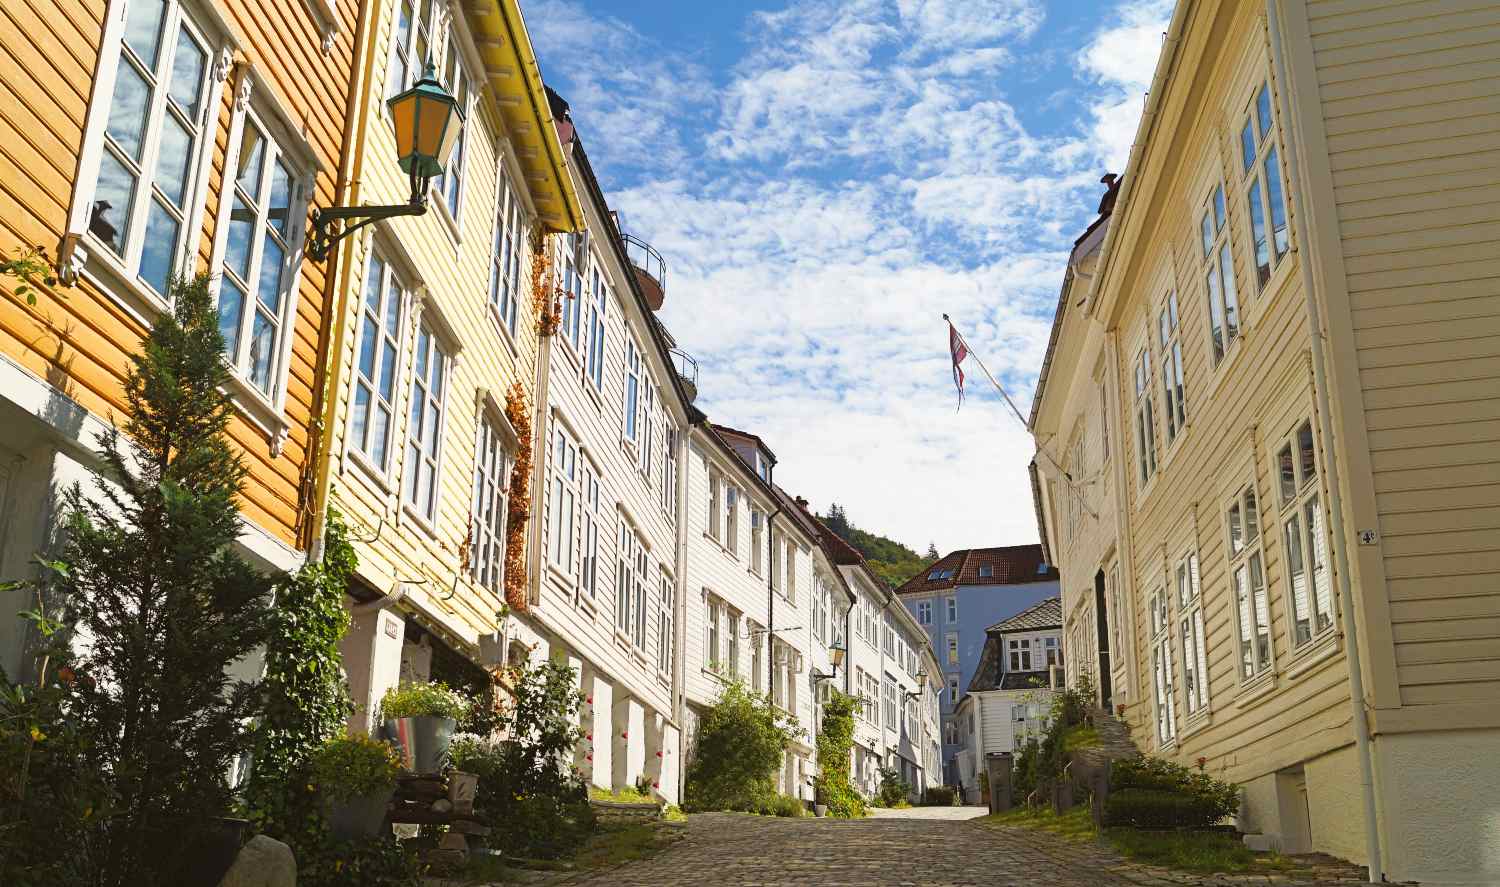 Neighbourhoods in Bergen city centre - wooden houses in Sandviken